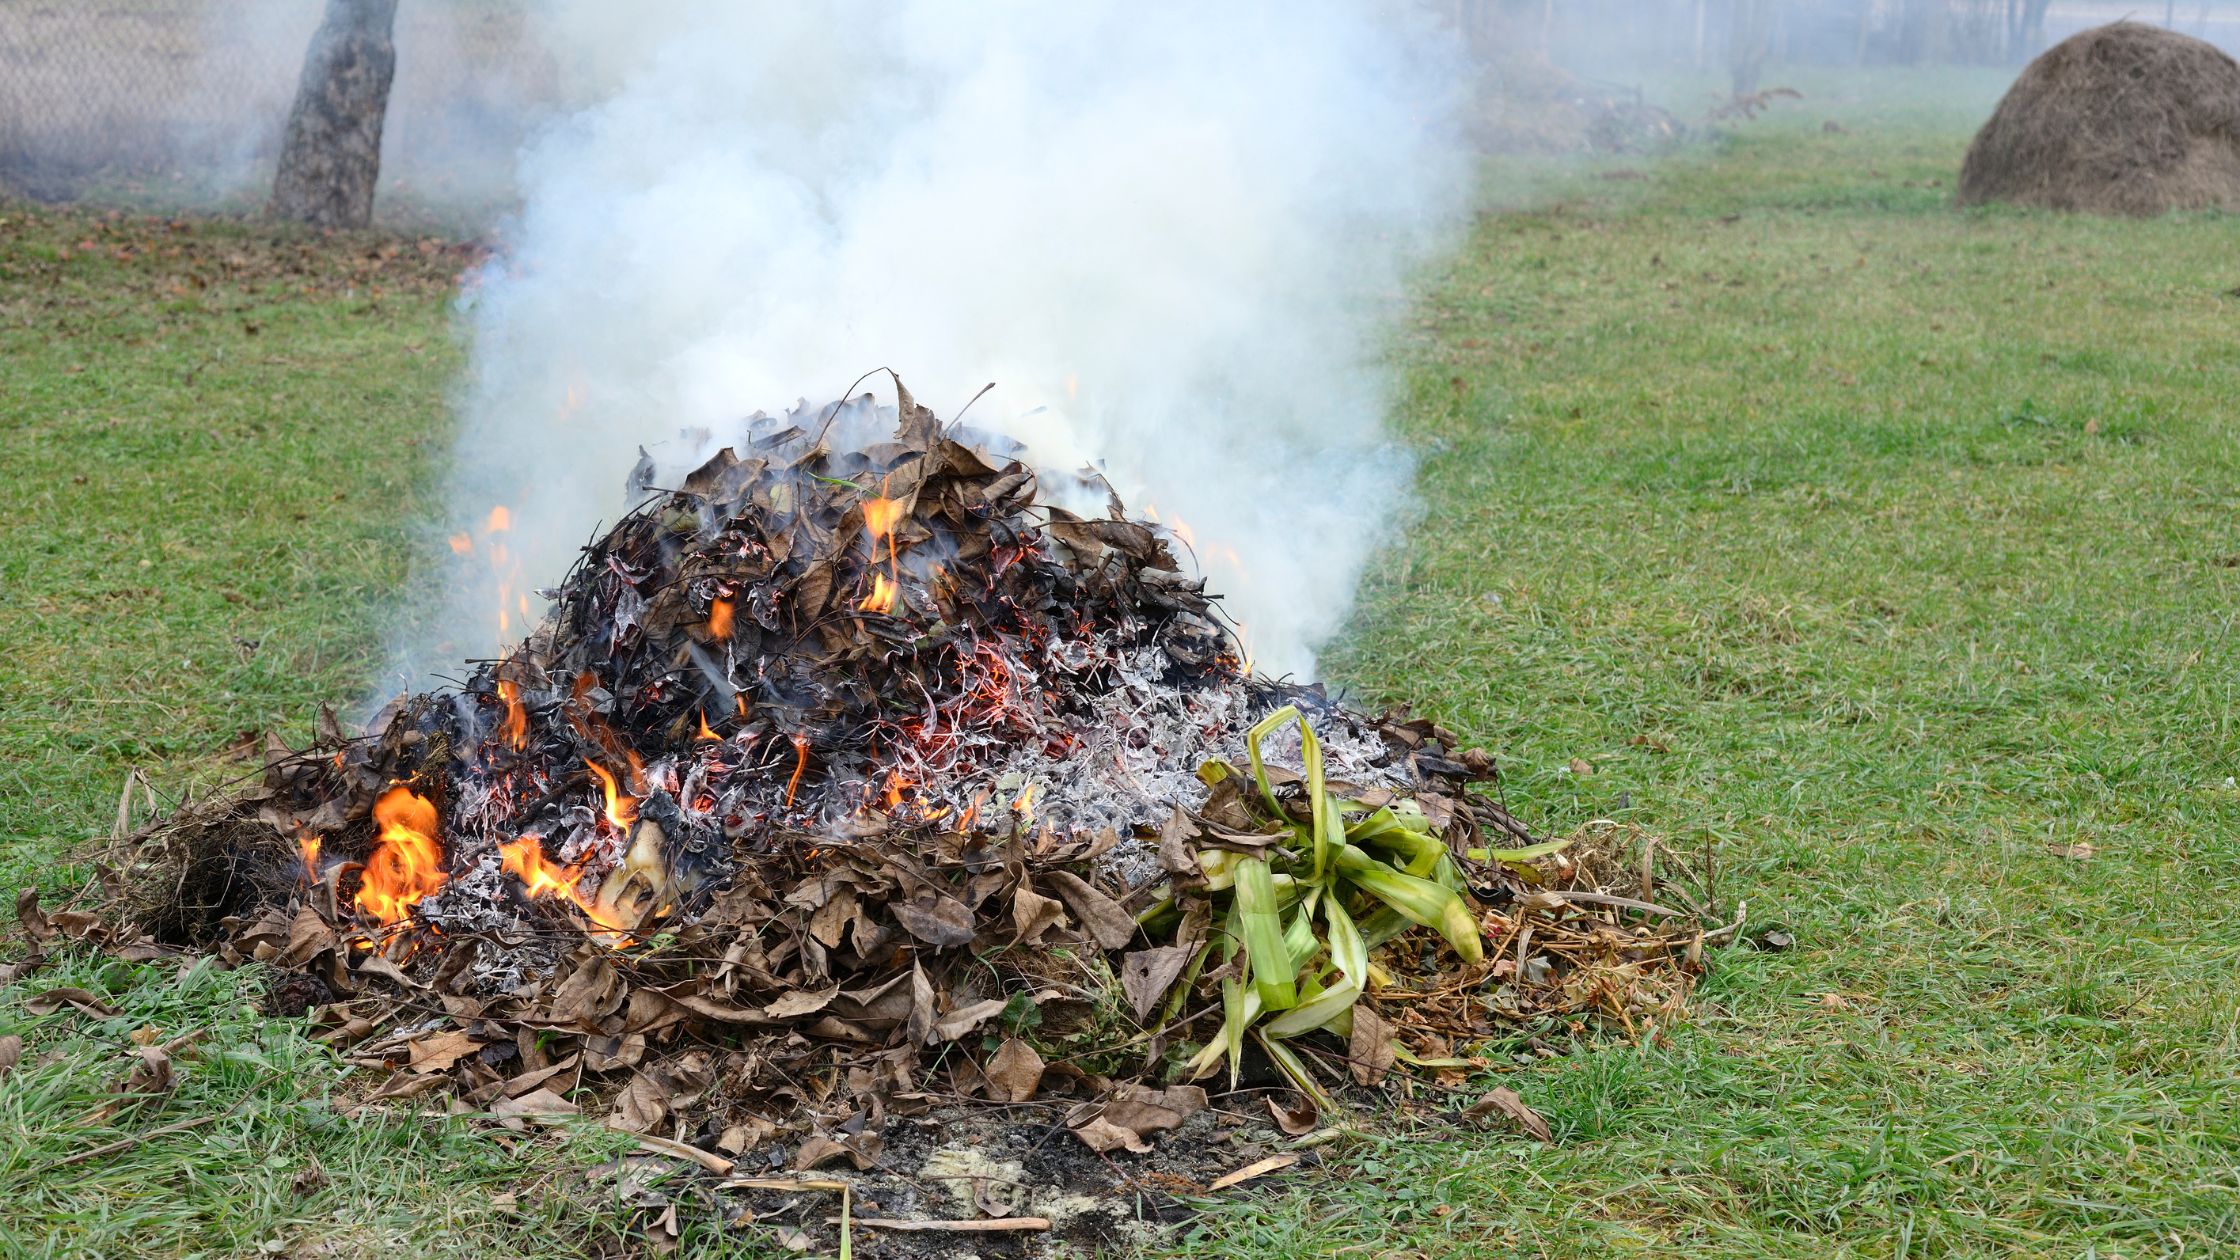 home improvement, burn leaves, leaf burning, leaf disposal, leaf removal, garden waste, yard waste